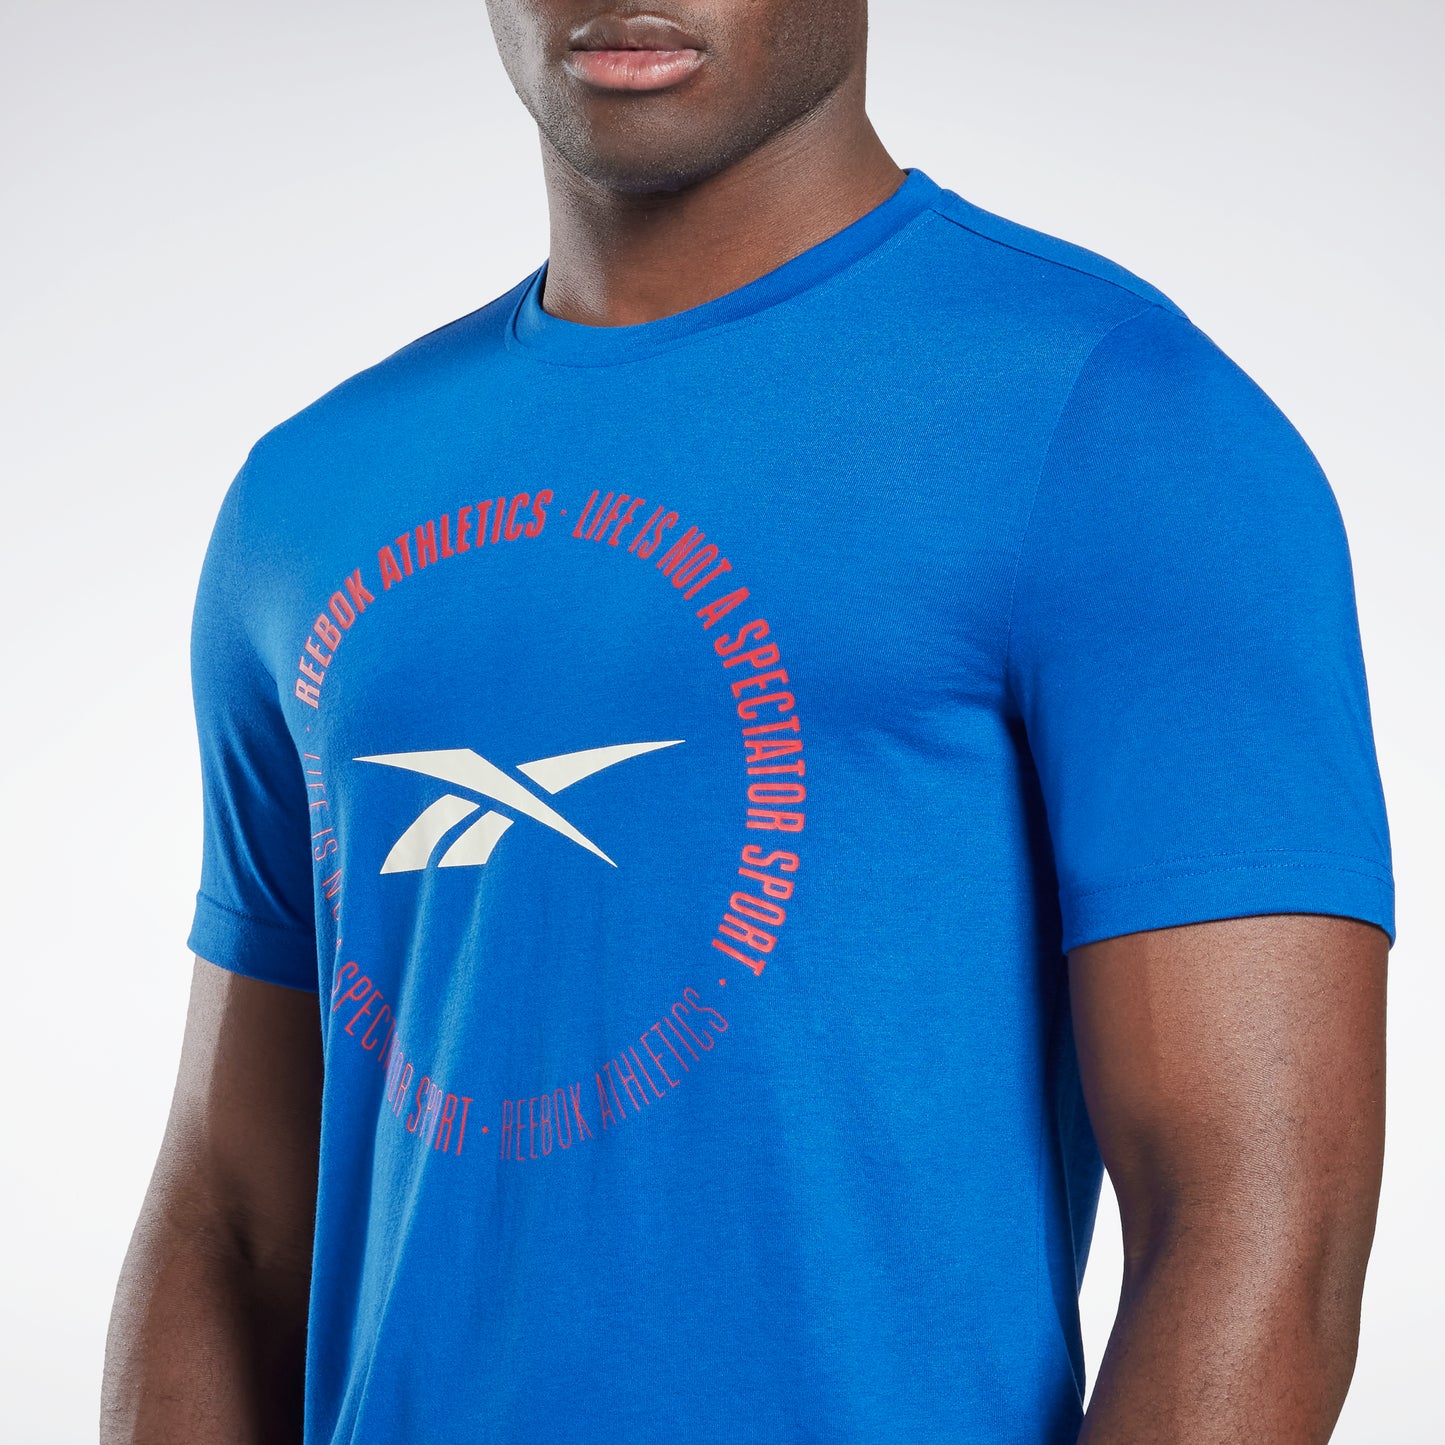 Reebok Life Is Not a Spectator Sport Graphic T-Shirt Vector Blue